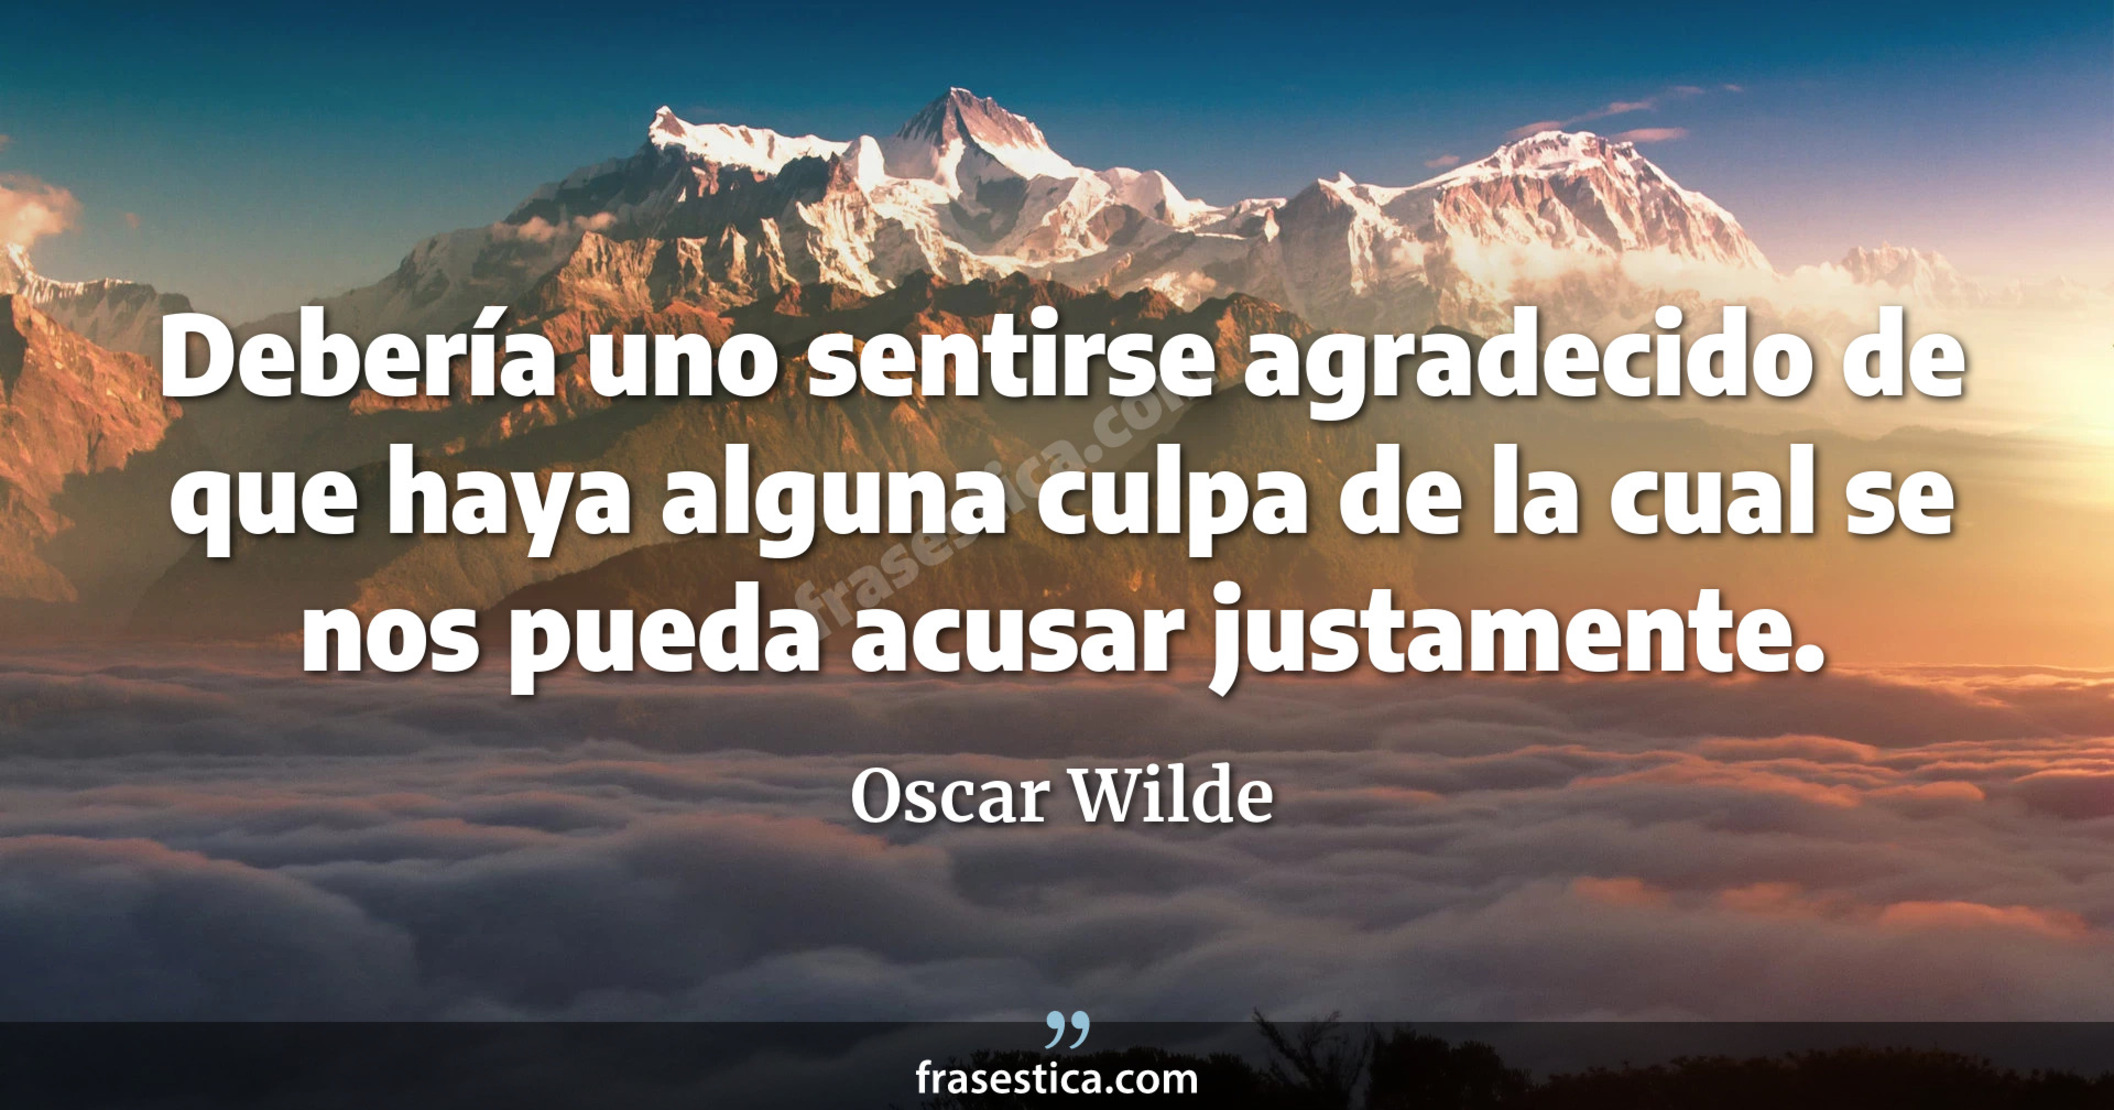 Debería uno sentirse agradecido de que haya alguna culpa de la cual se nos pueda acusar justamente. - Oscar Wilde